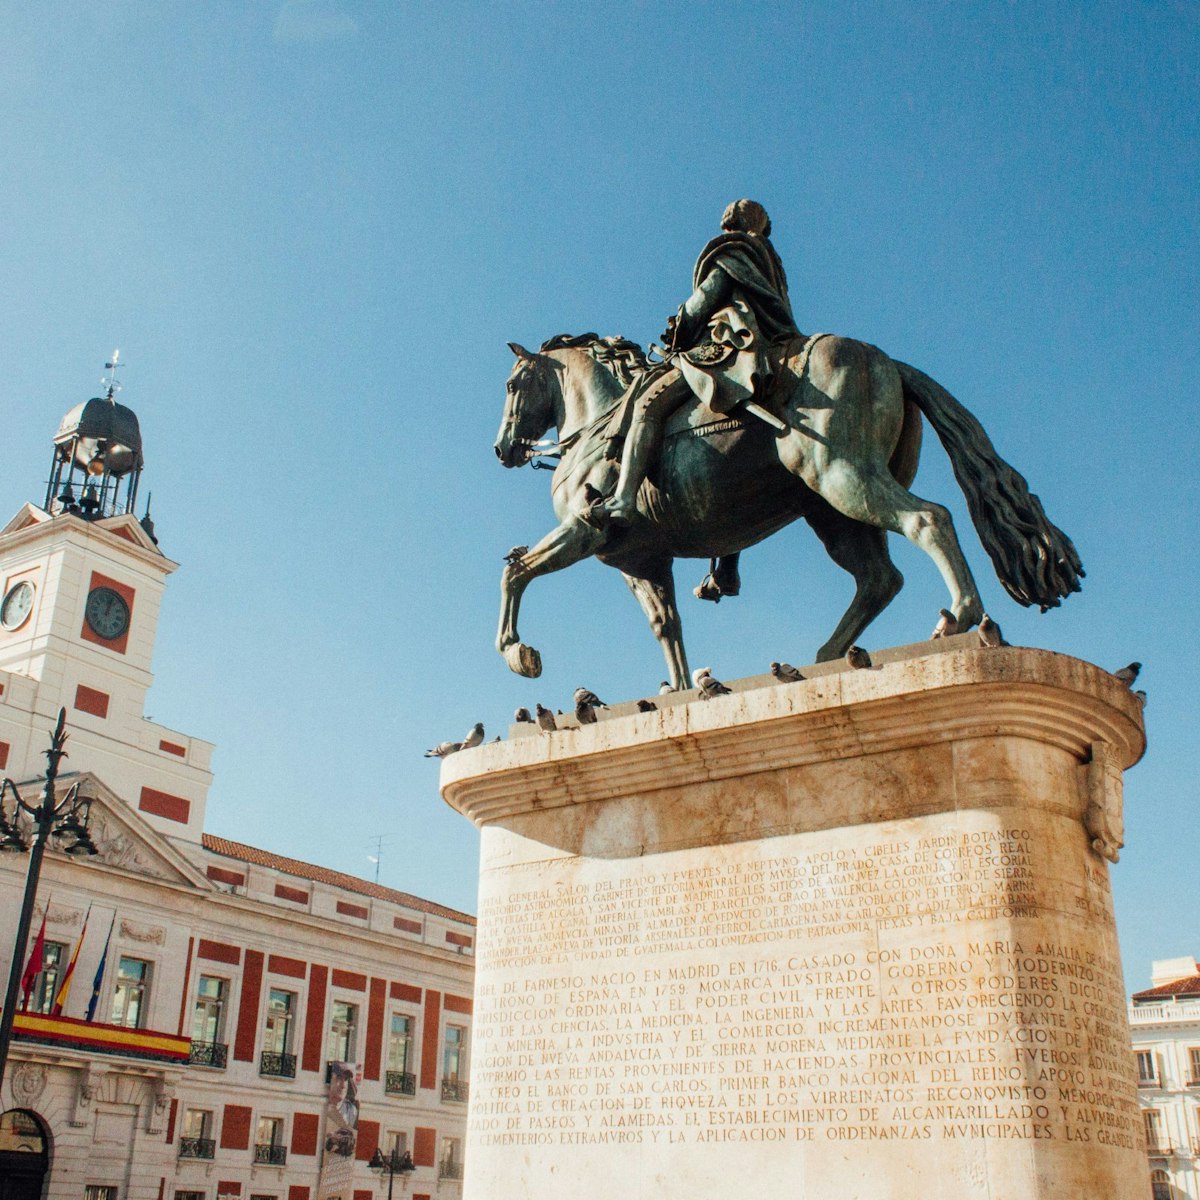 The Carlos III Equestrian Statue faces the Casa de Correos.